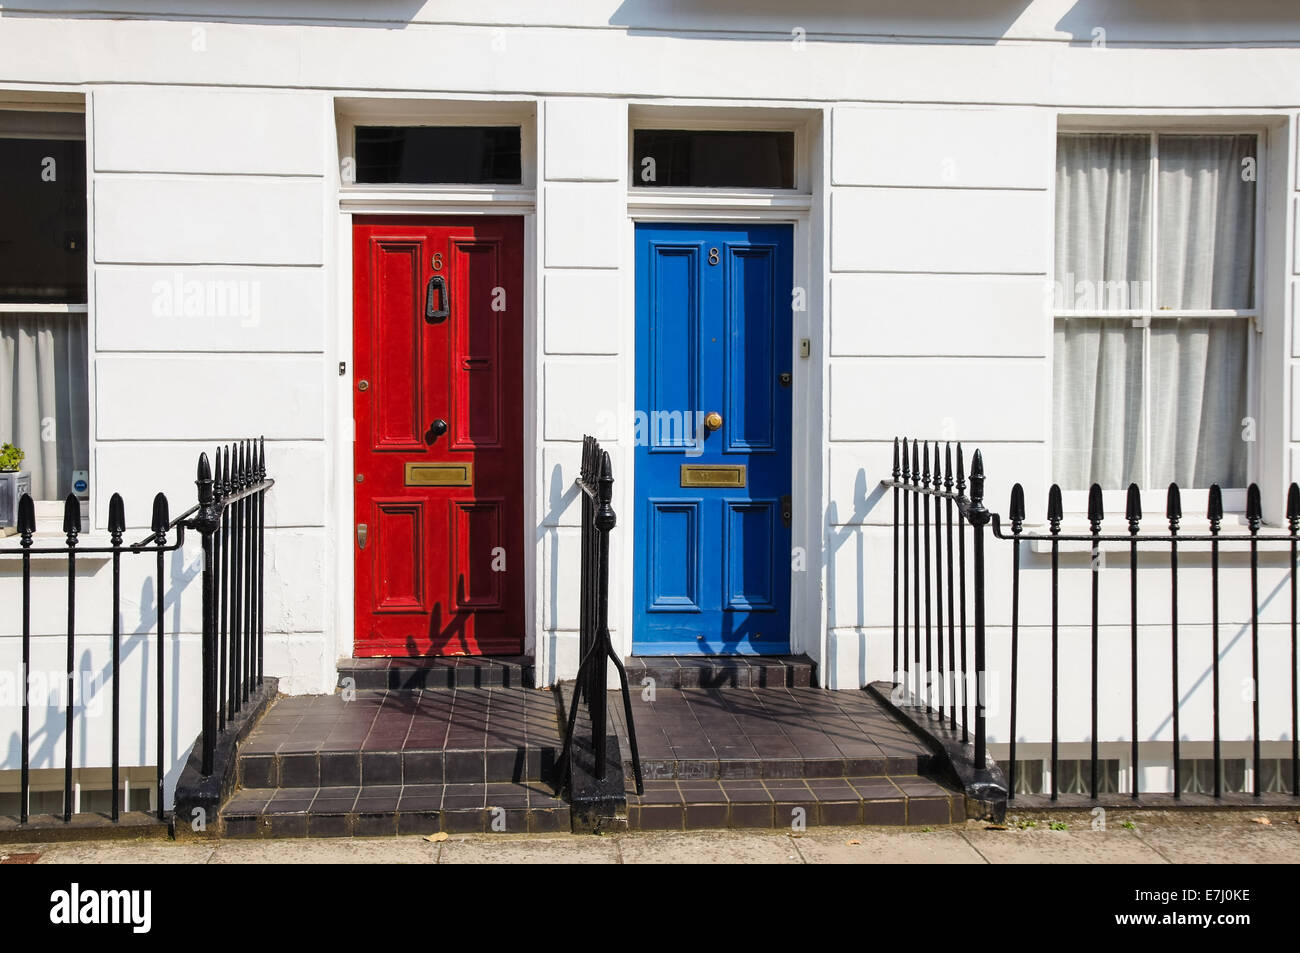 Portes de façade victorienne classique de maison mitoyenne à Londres Angleterre Royaume-Uni Banque D'Images